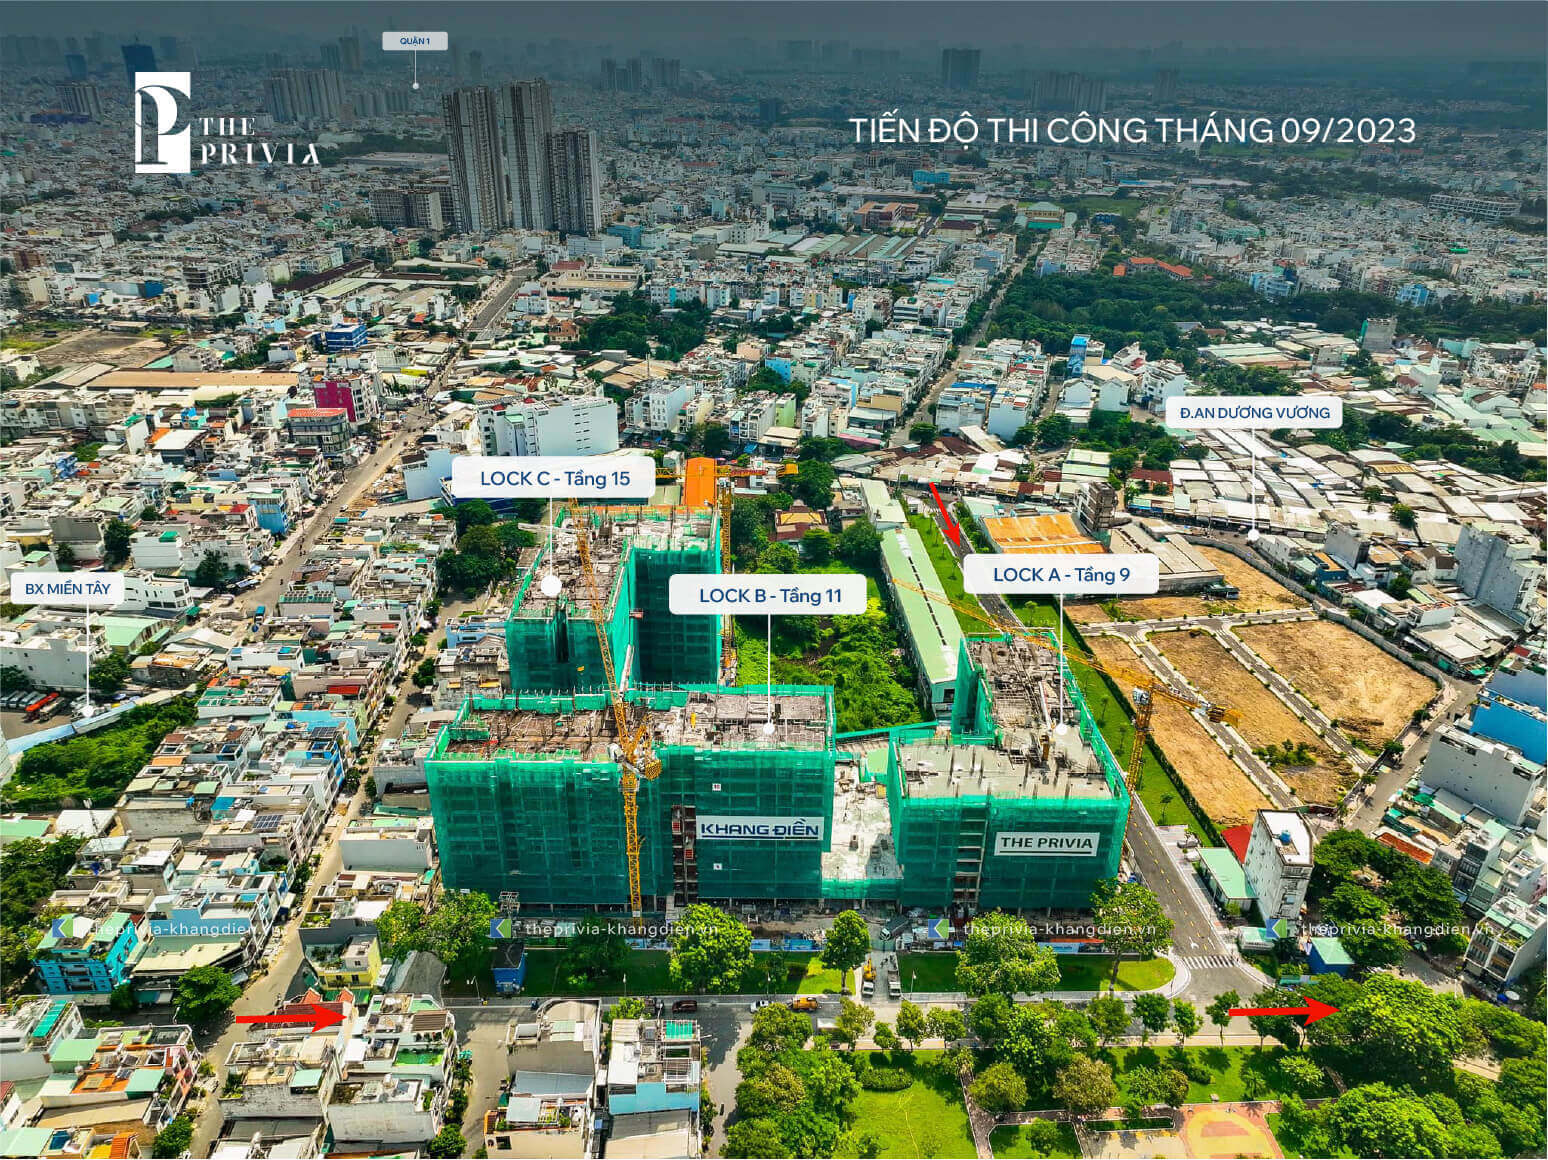 Tiến độ xây dựng tháng 9/2023, dự án The Privia Khang Điền